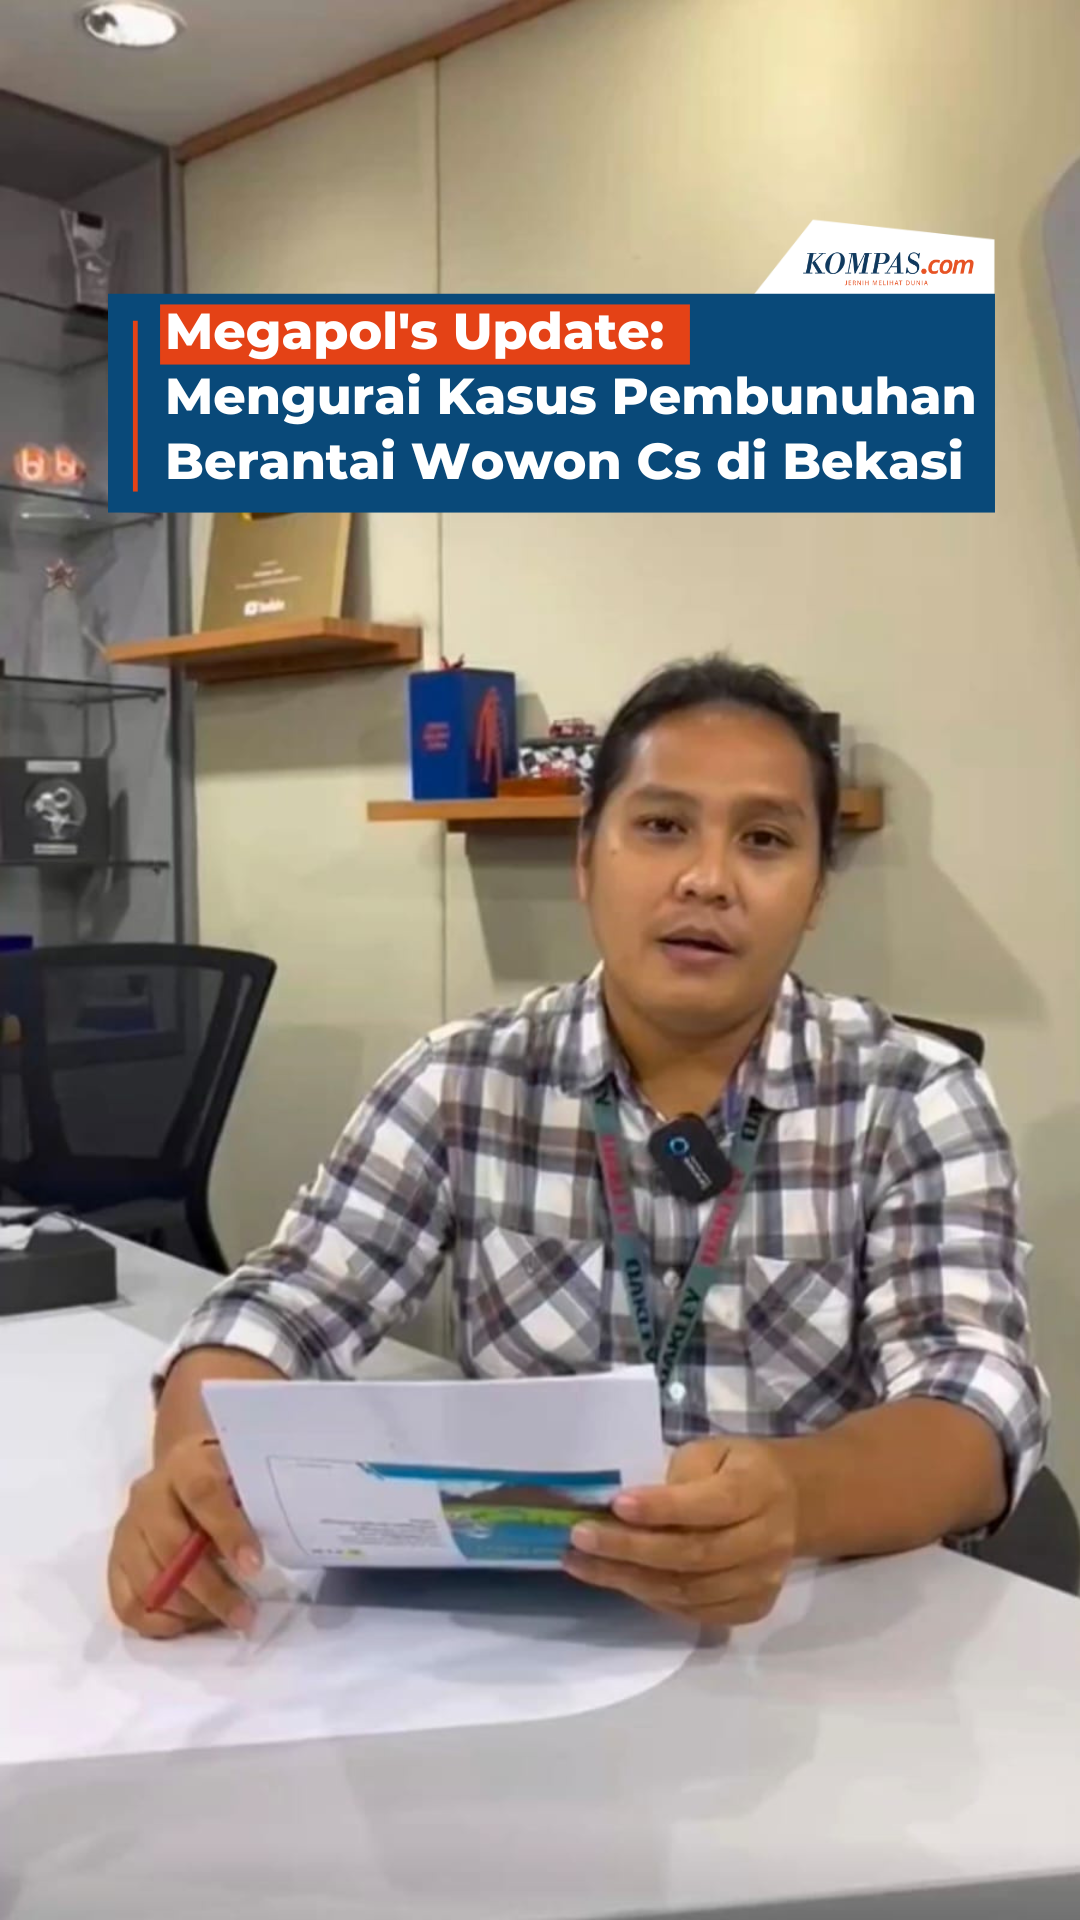 Megapol's Update: Mengurai Kasus Pembunuhan Berantai Wowon Cs di Bekasi